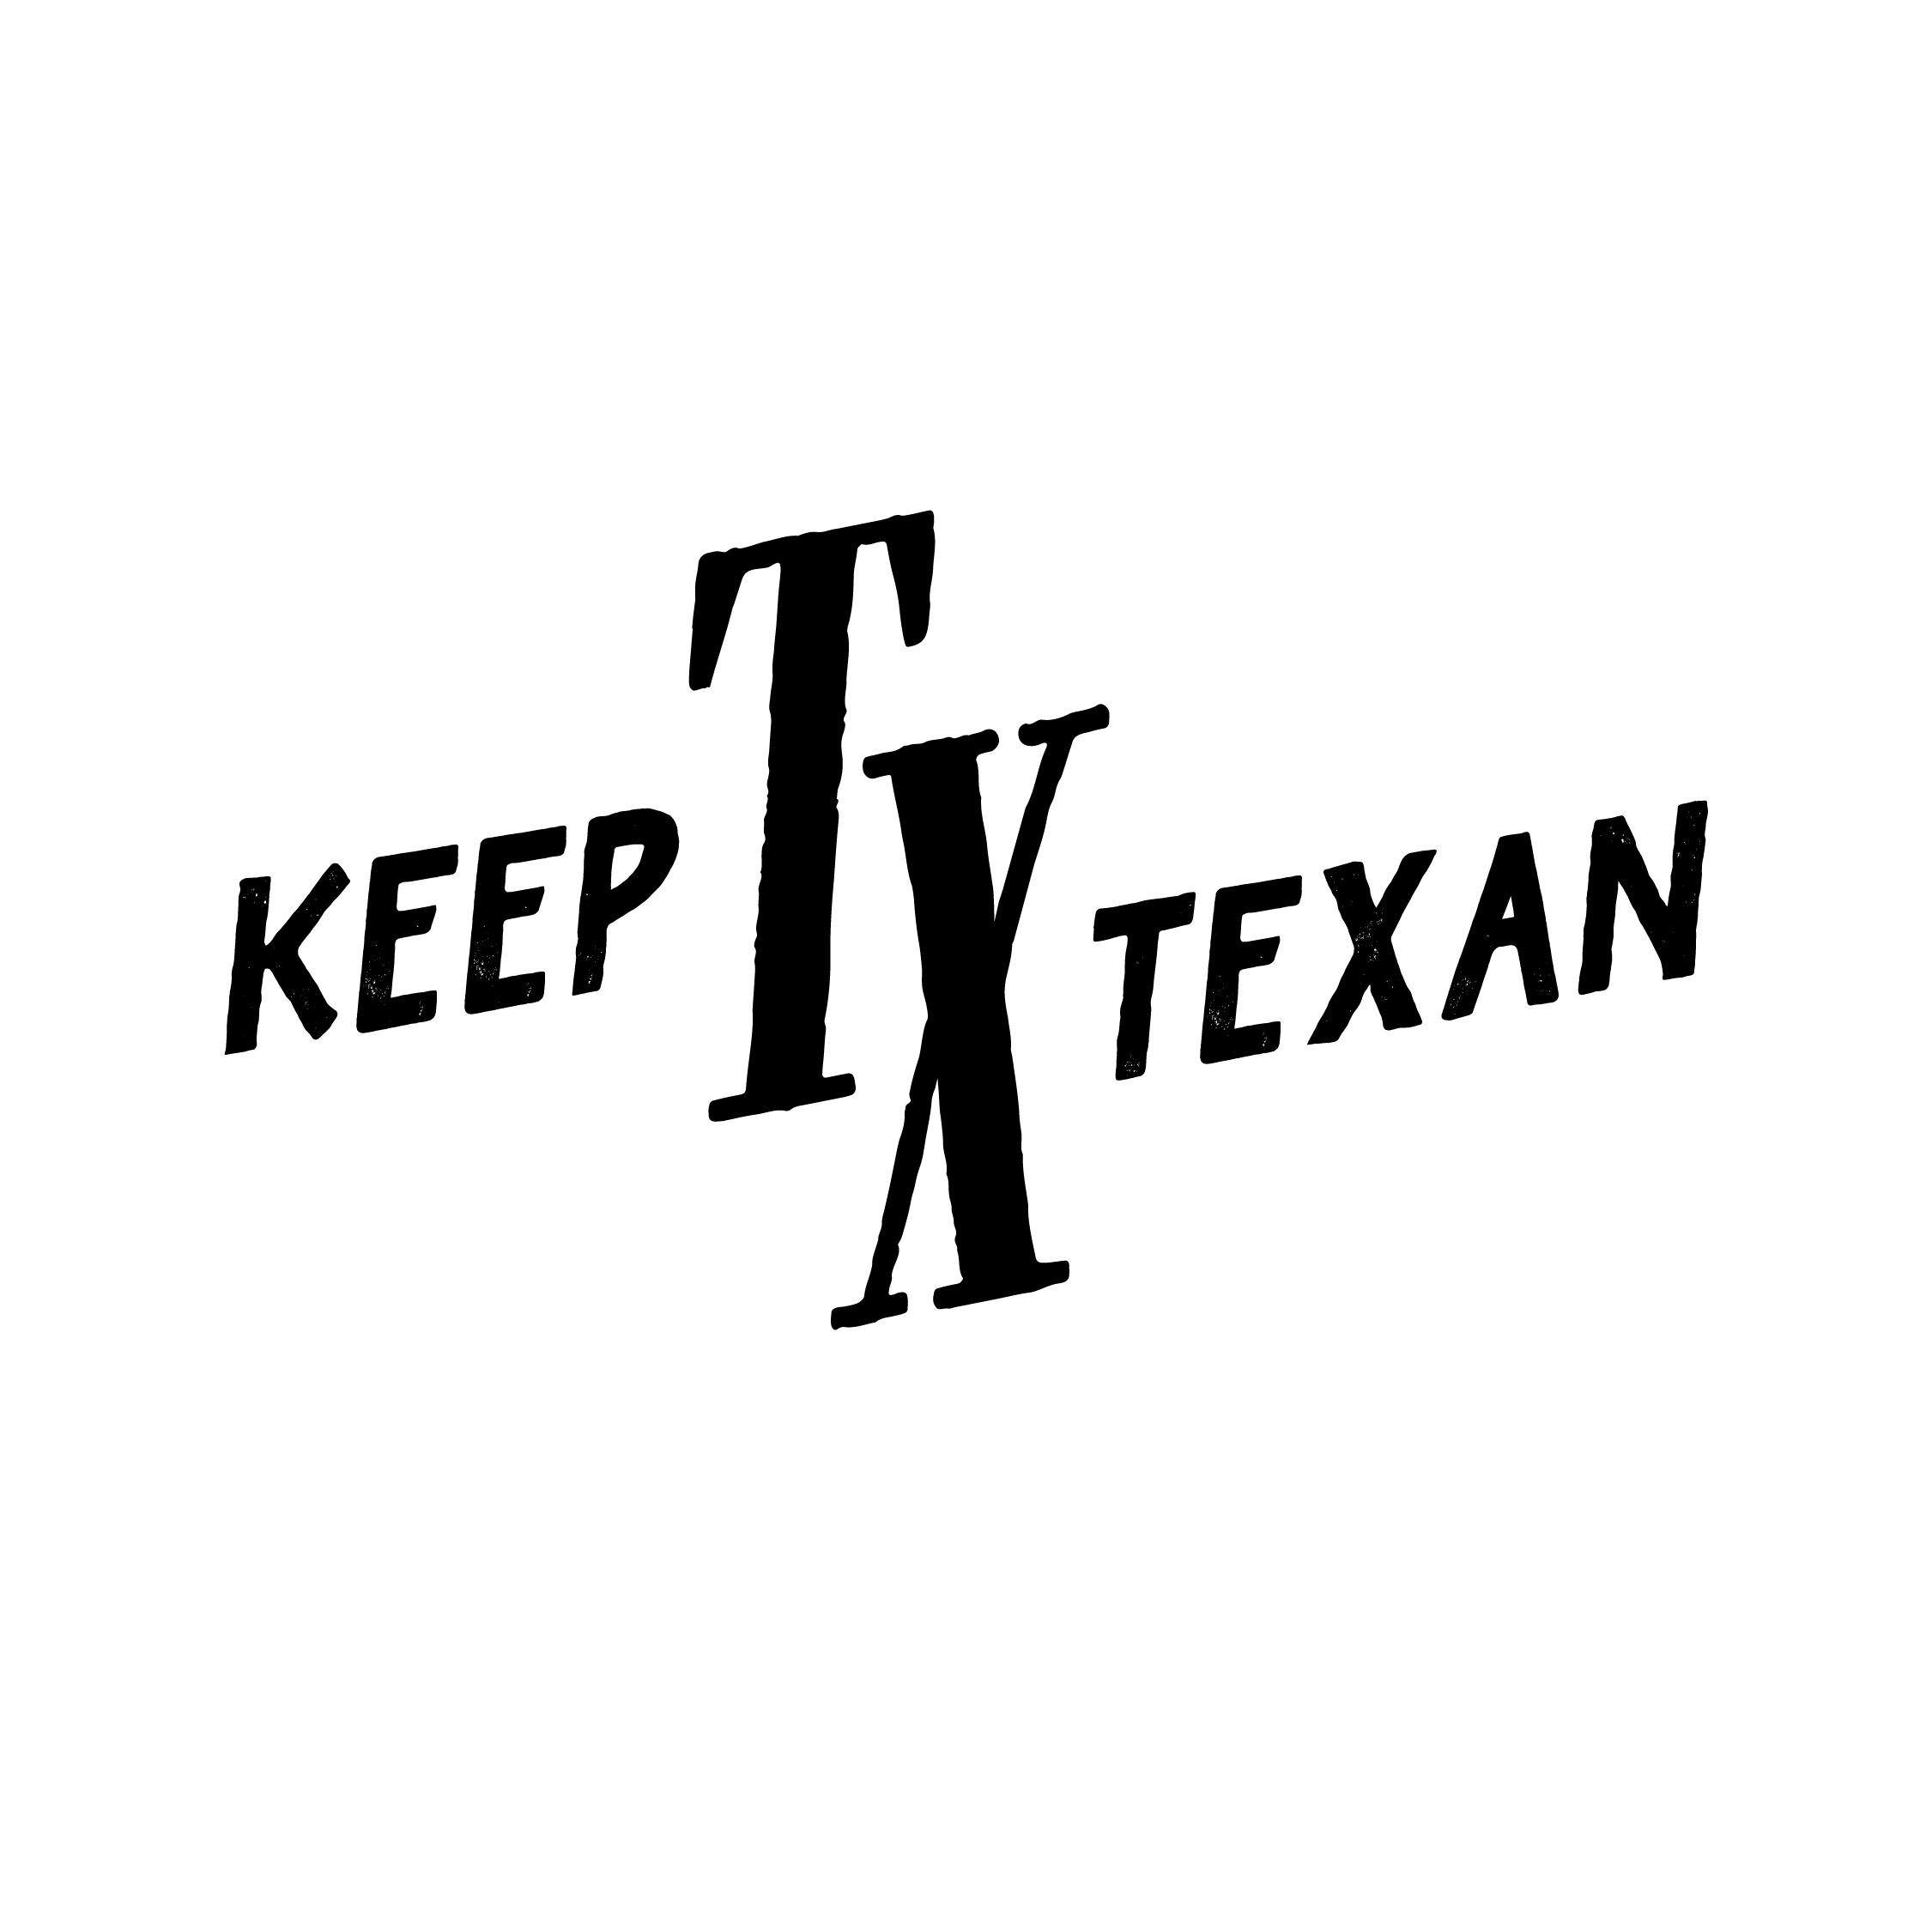 Keep Texas Texan